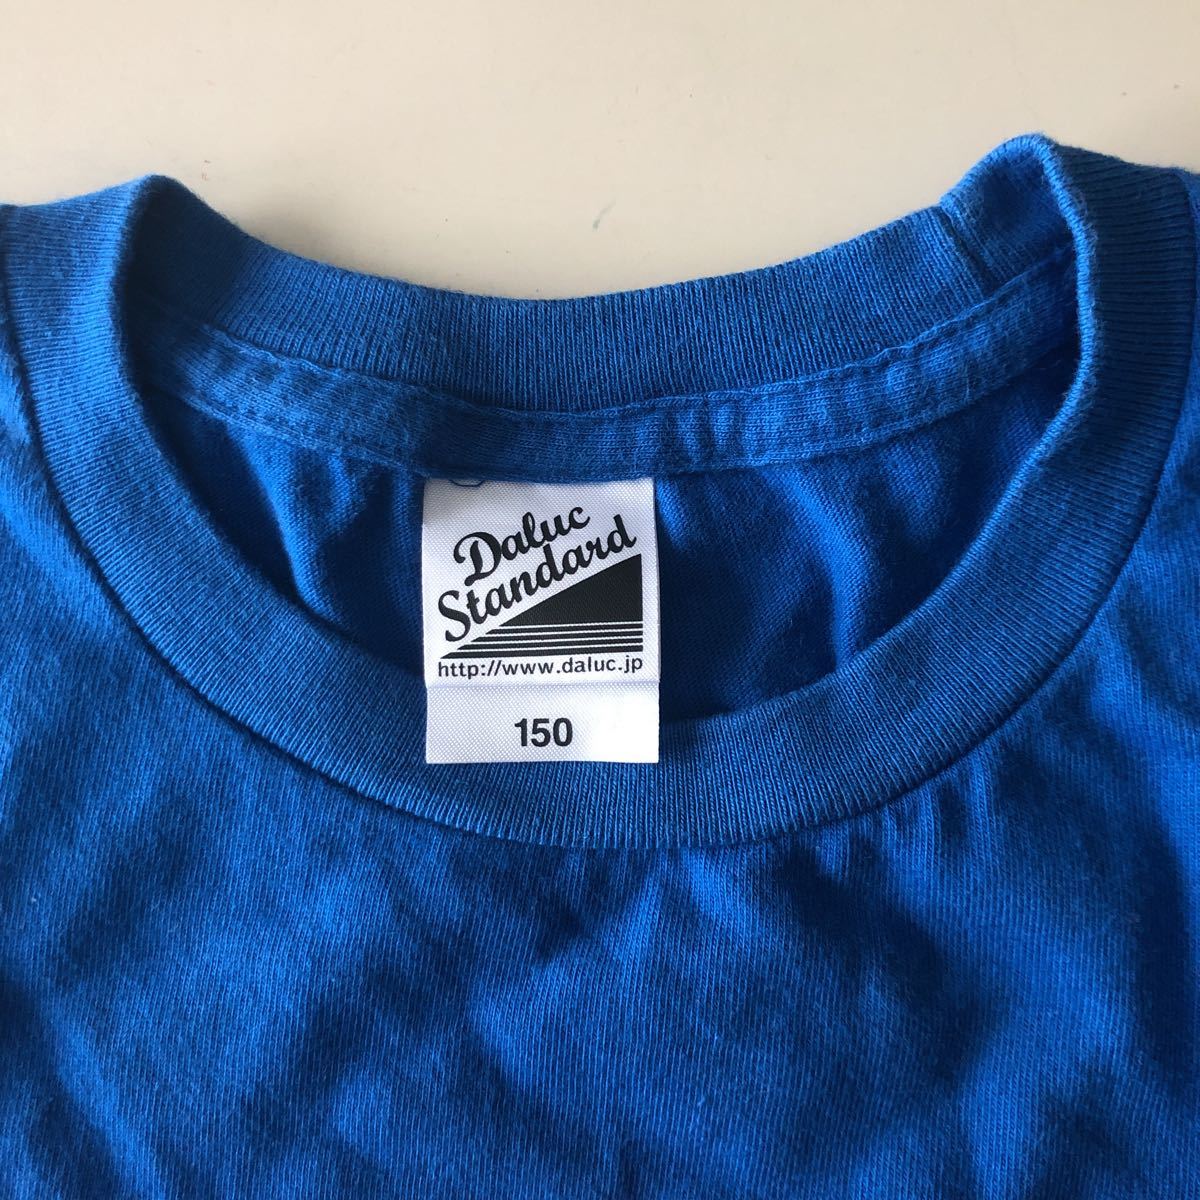 半袖Tシャツ Tシャツ スペースワールド テーマパーク 北九州 日本 150サイズ ブルー 中古 記念品 レア コレクション_画像3